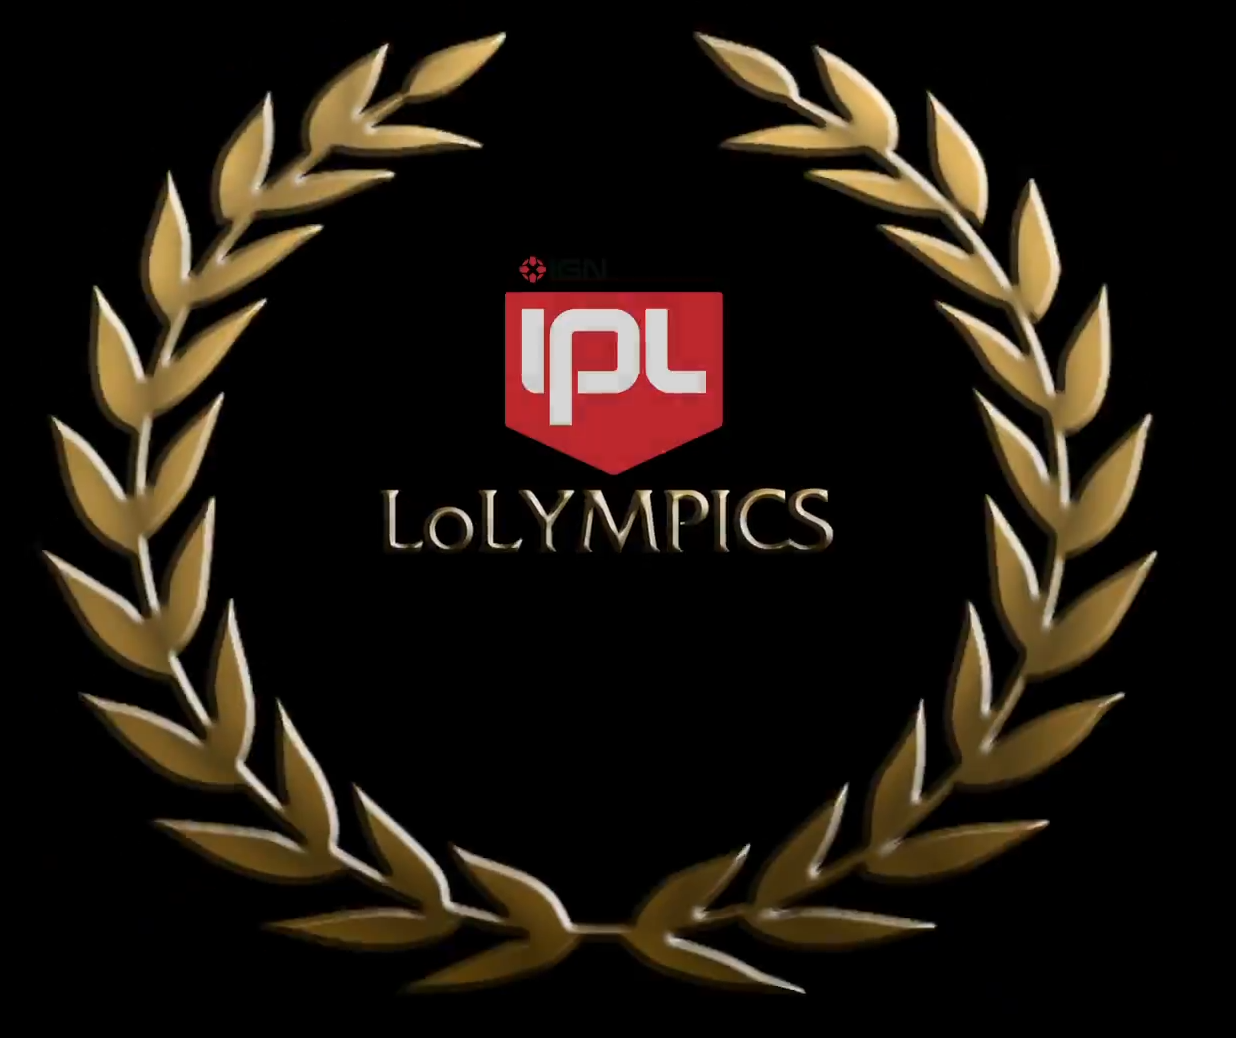 ipl 5 league of legends vods